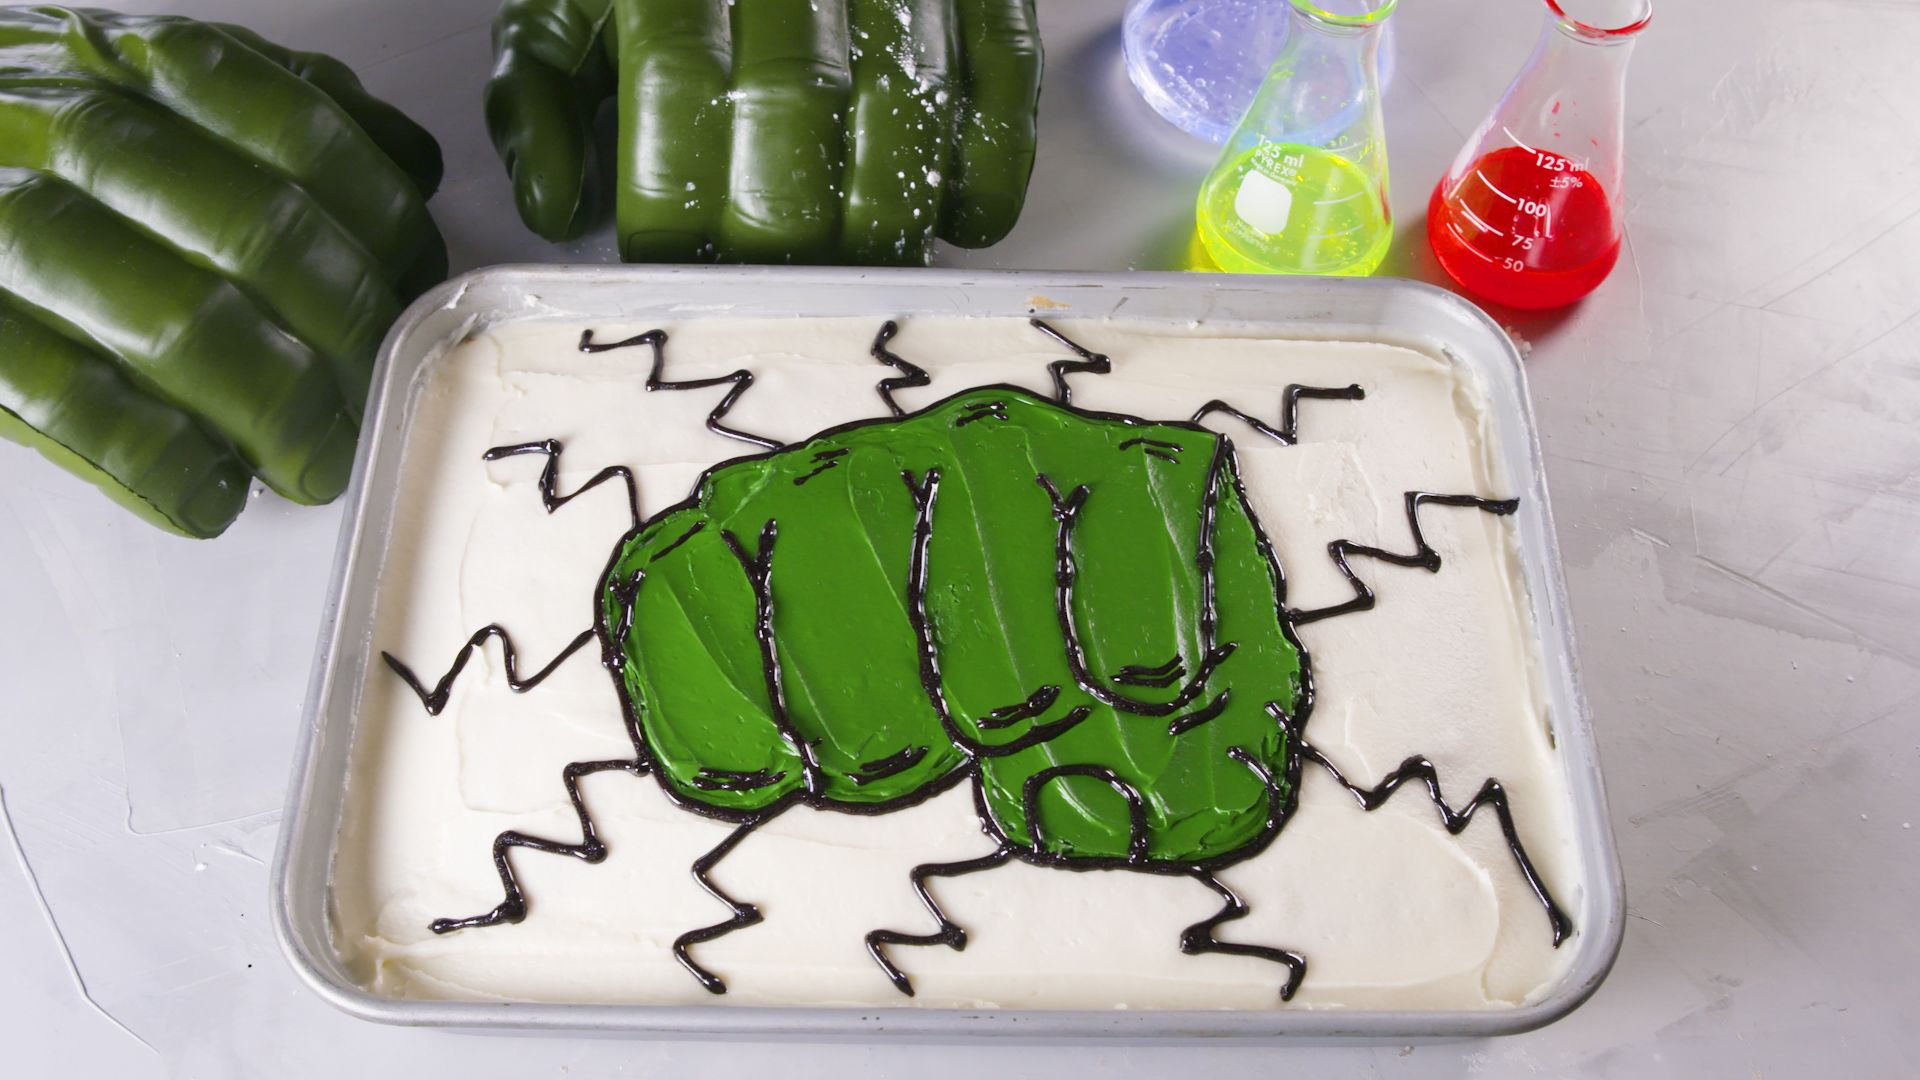 1 Kg |The Hulk Cake